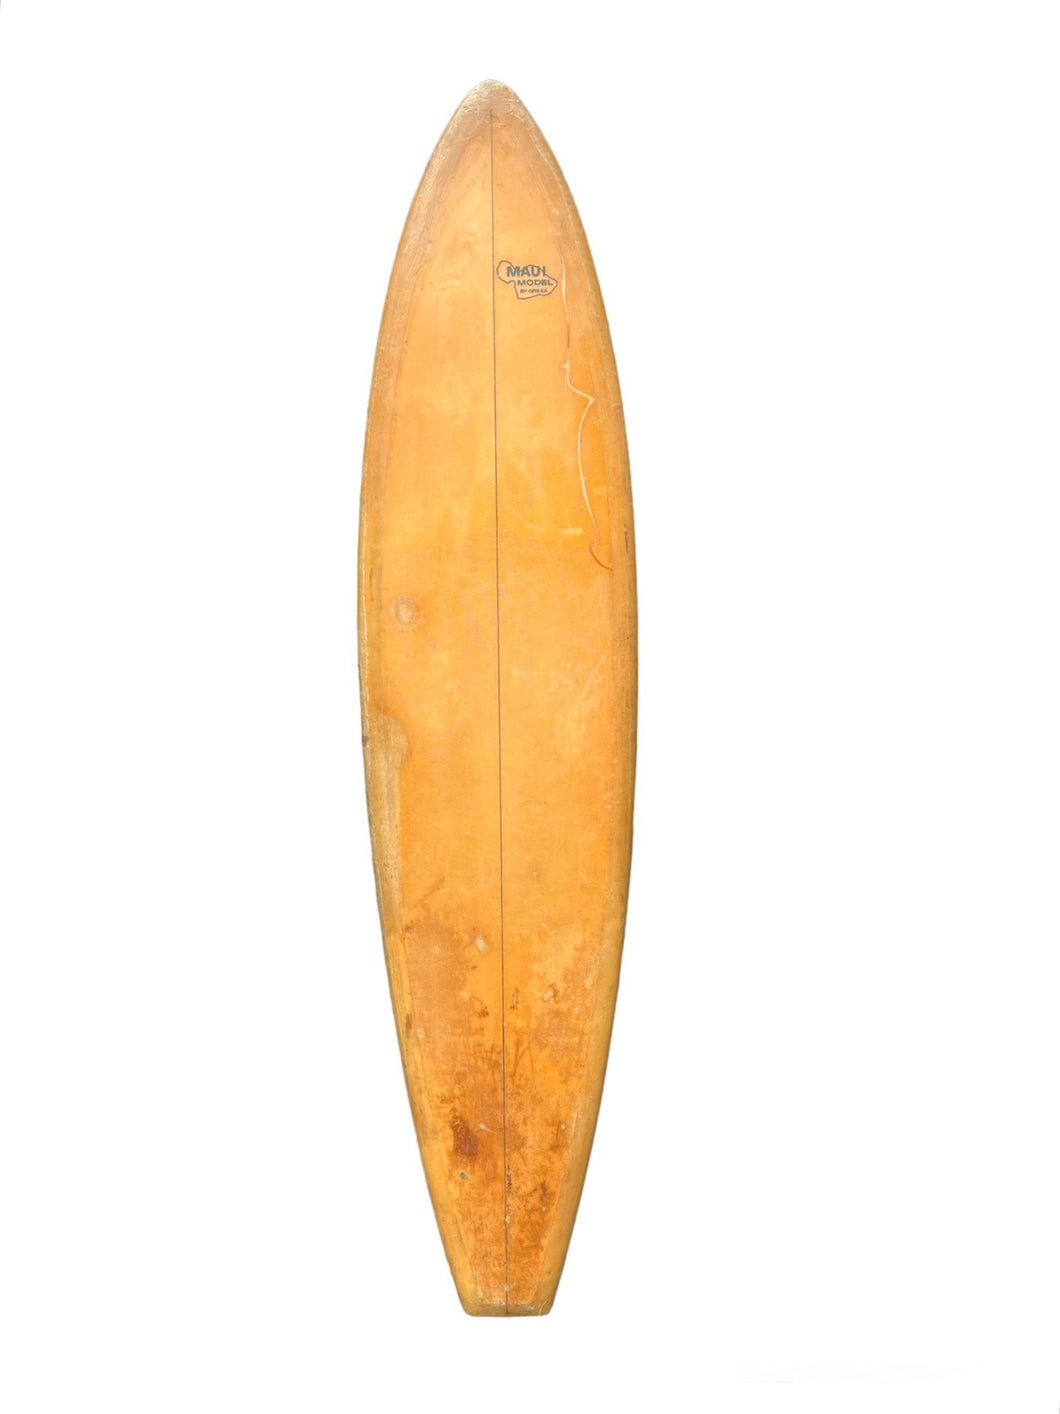 Greek surfboard